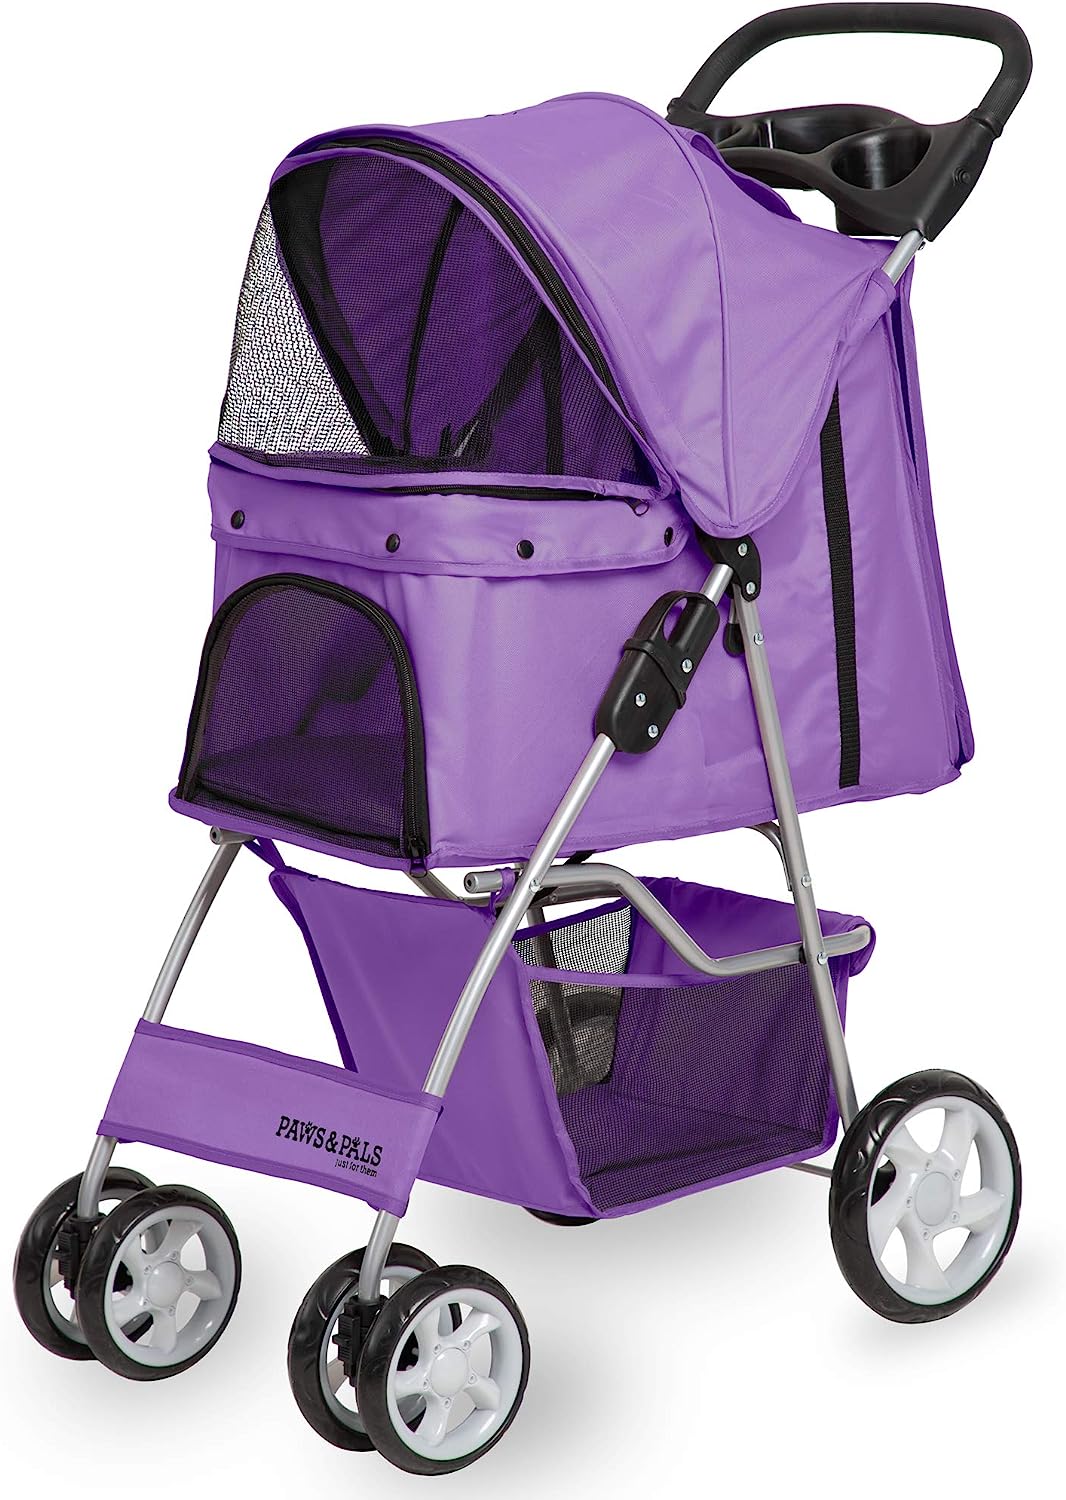 bright purple stroller with storage underneath